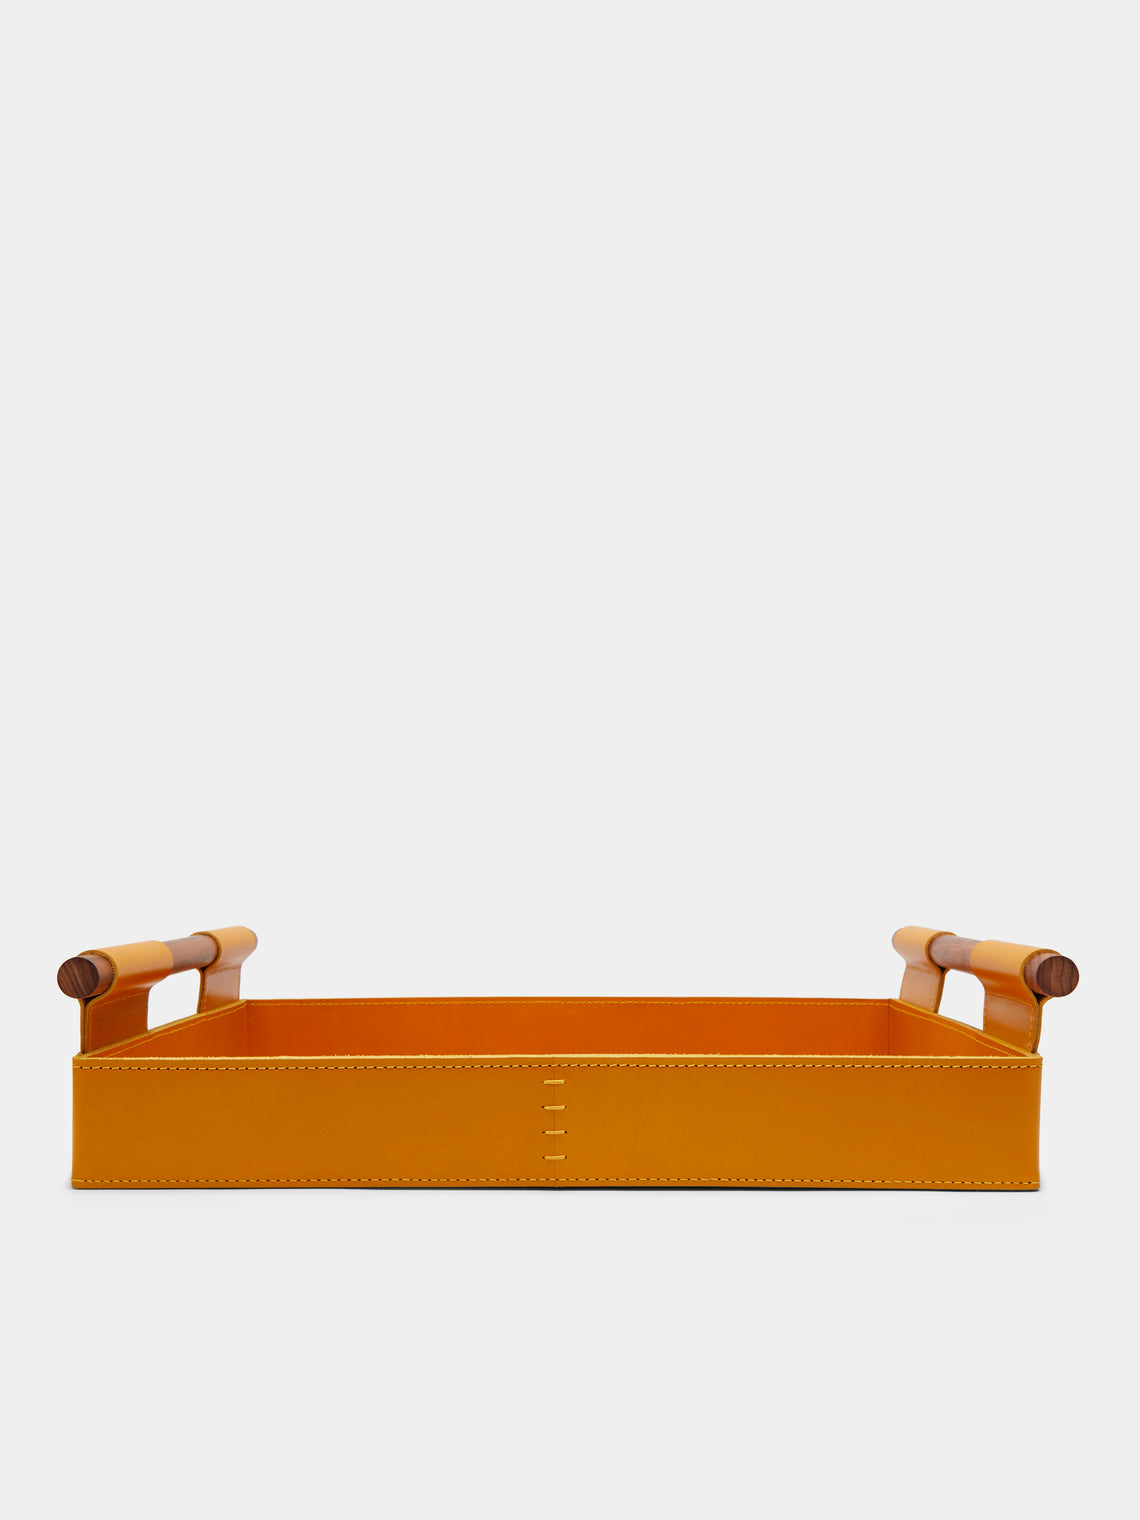 Rabitti 1969 - Sorrento Leather Tray - Yellow - ABASK